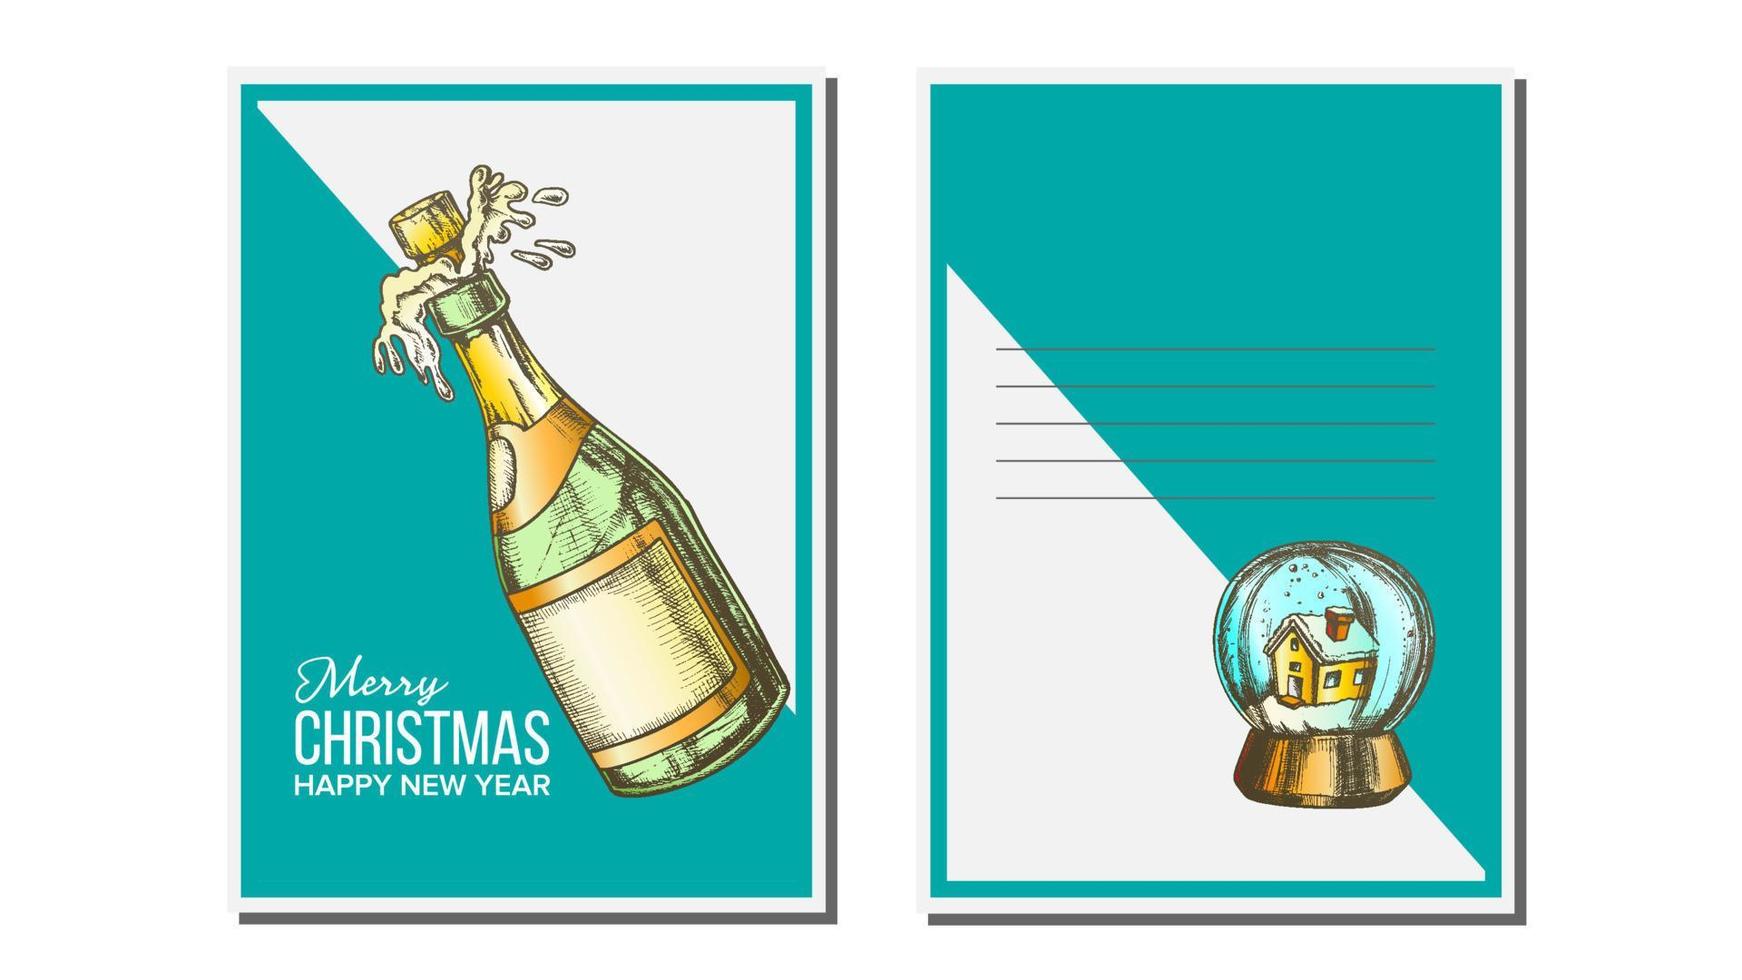 vector de tarjeta de felicitación de navidad. Botella de champagne. estaciones. deseos de invierno. concepto de vacaciones. dibujado a mano ilustración de estilo vintage